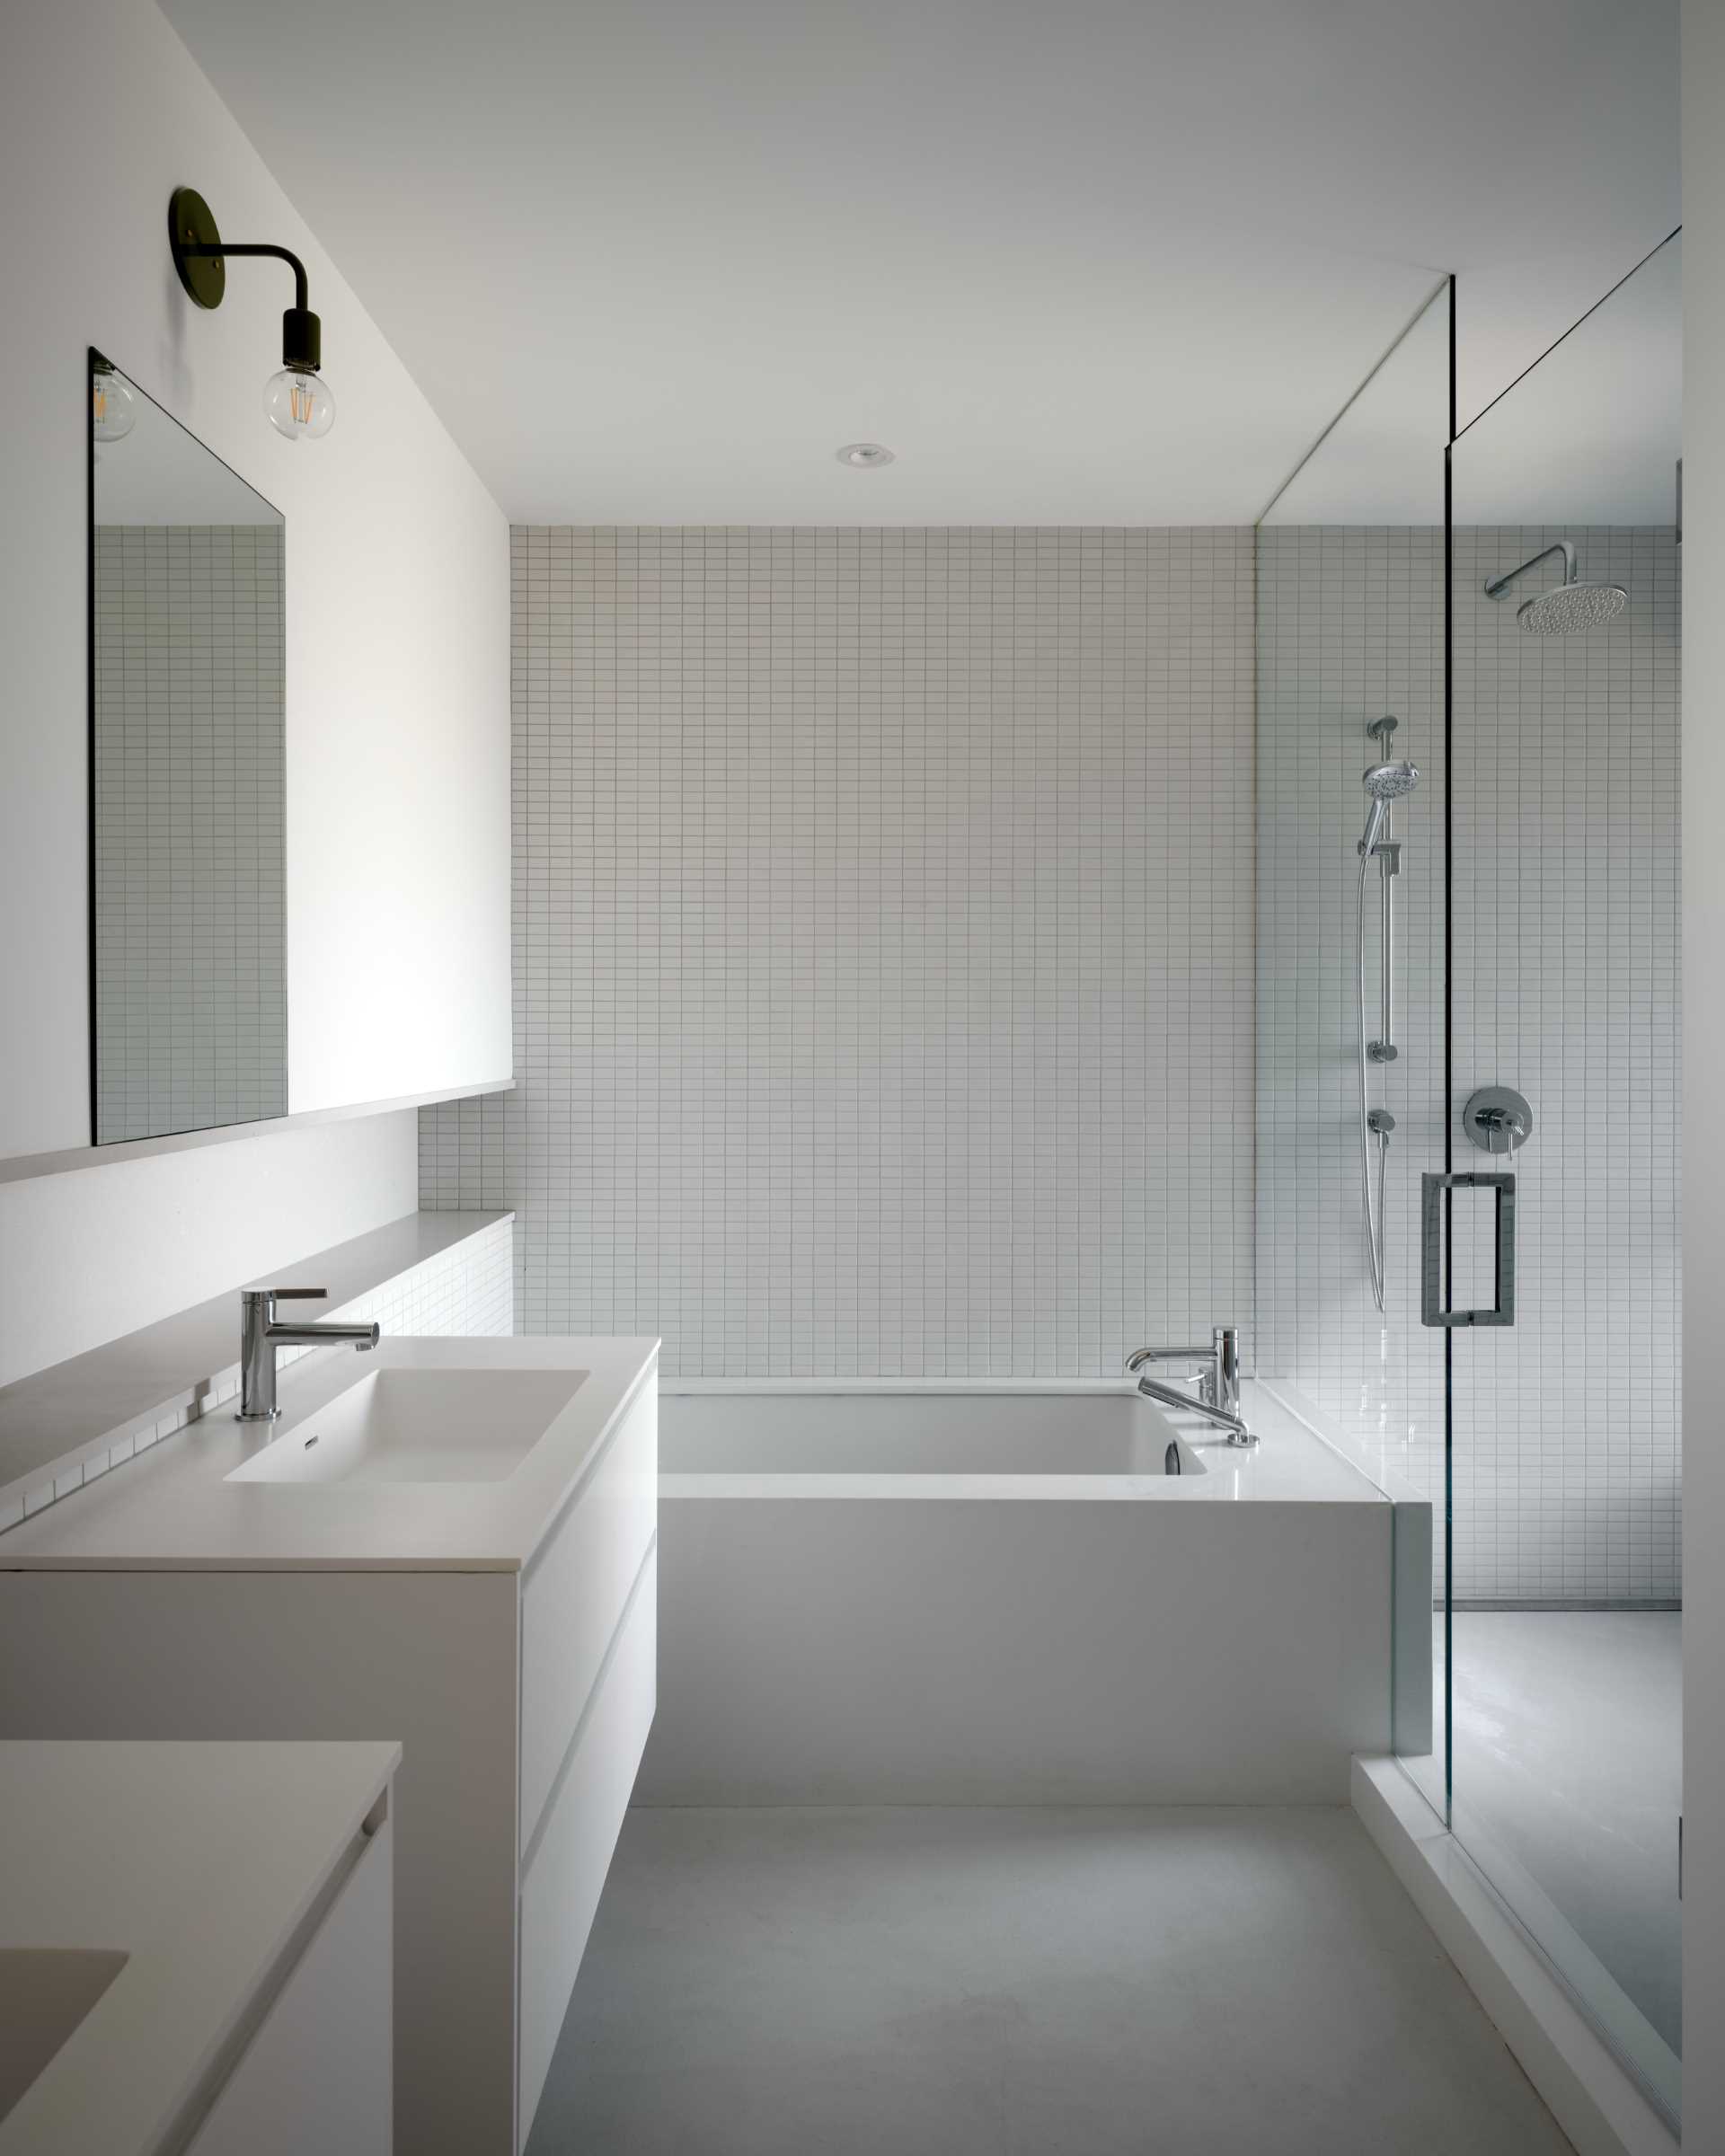 O baie modernă are o cadă încorporată cu un perete de gresie care continuă până la duș.